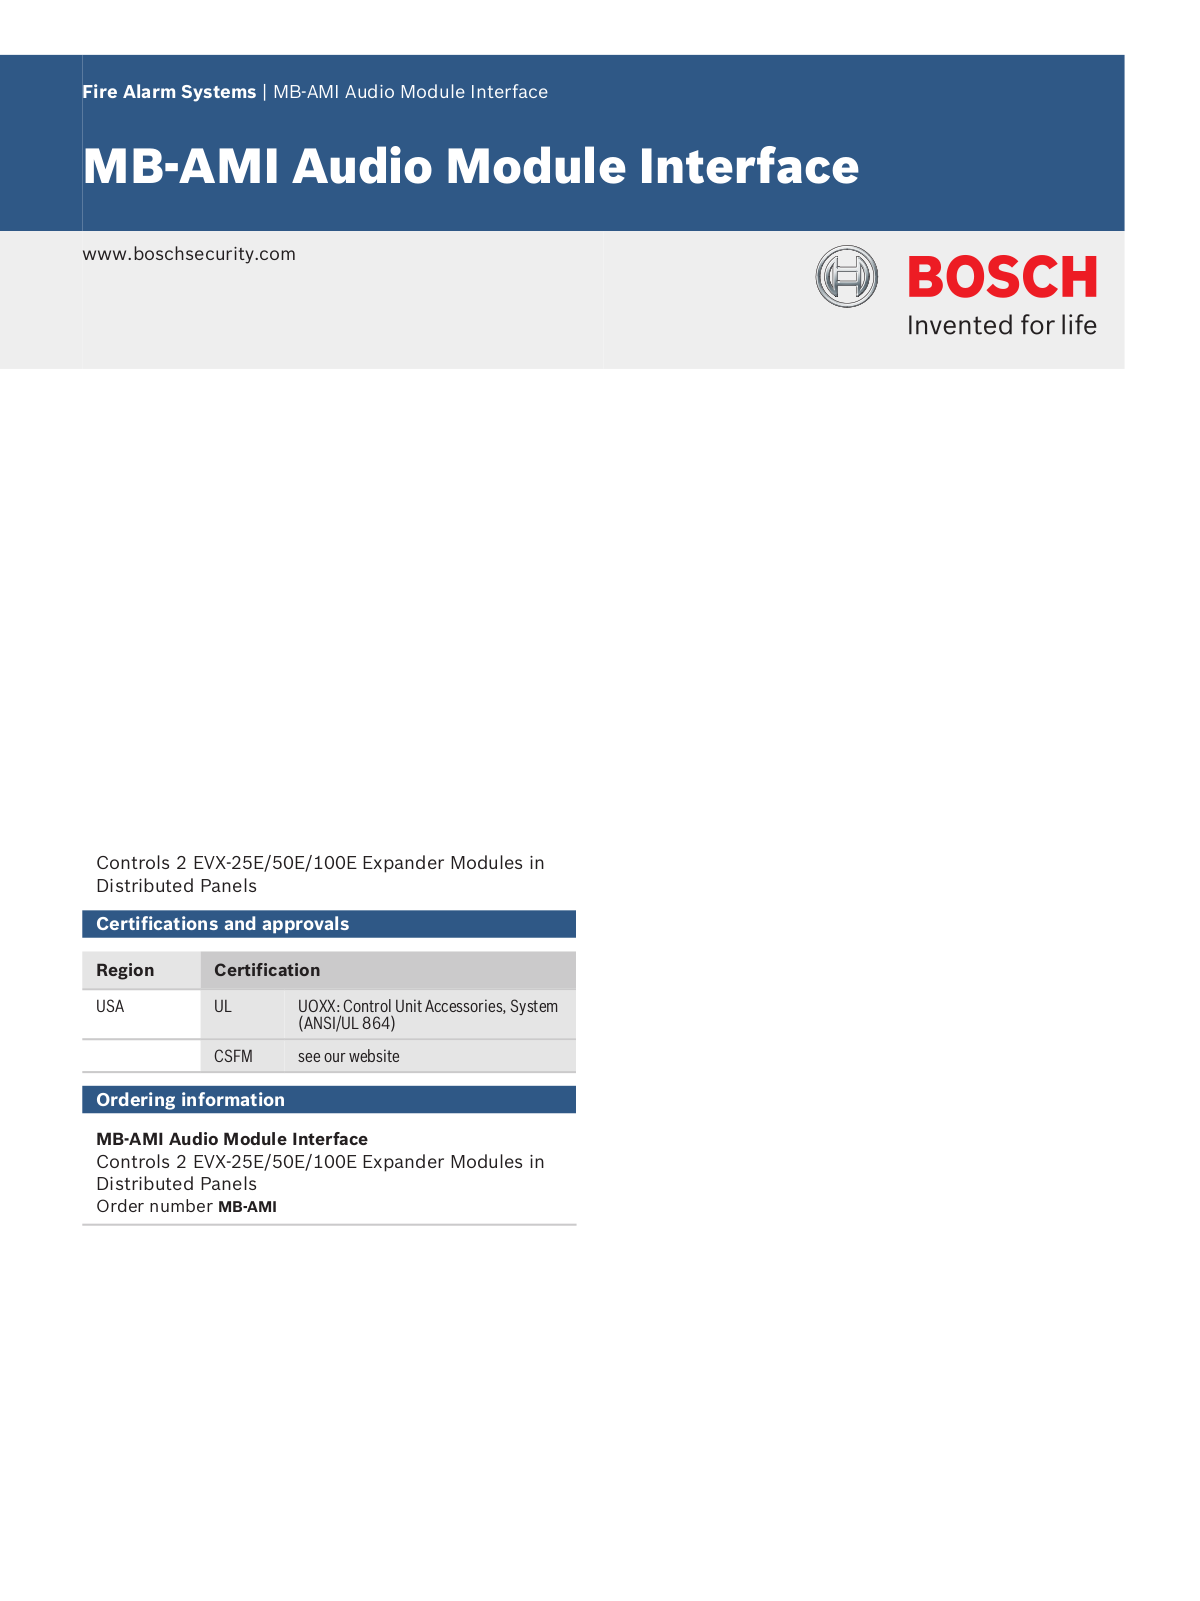 Bosch MB-AMI Specsheet